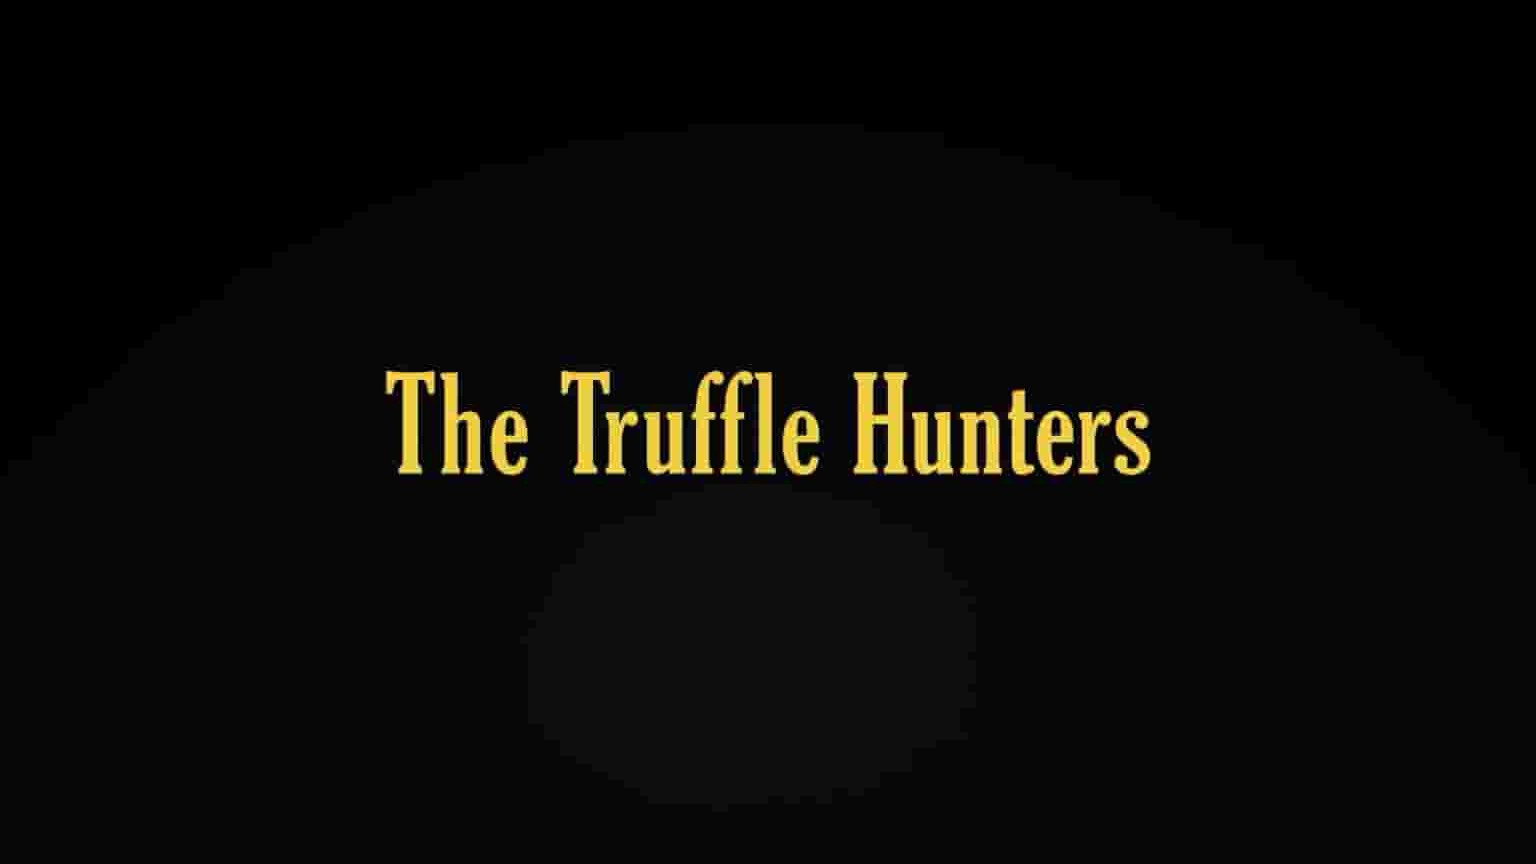 意大利纪录片《松露猎人 The Truffle Hunters 2020》全1集 英语中字 1080P高清网盘下载